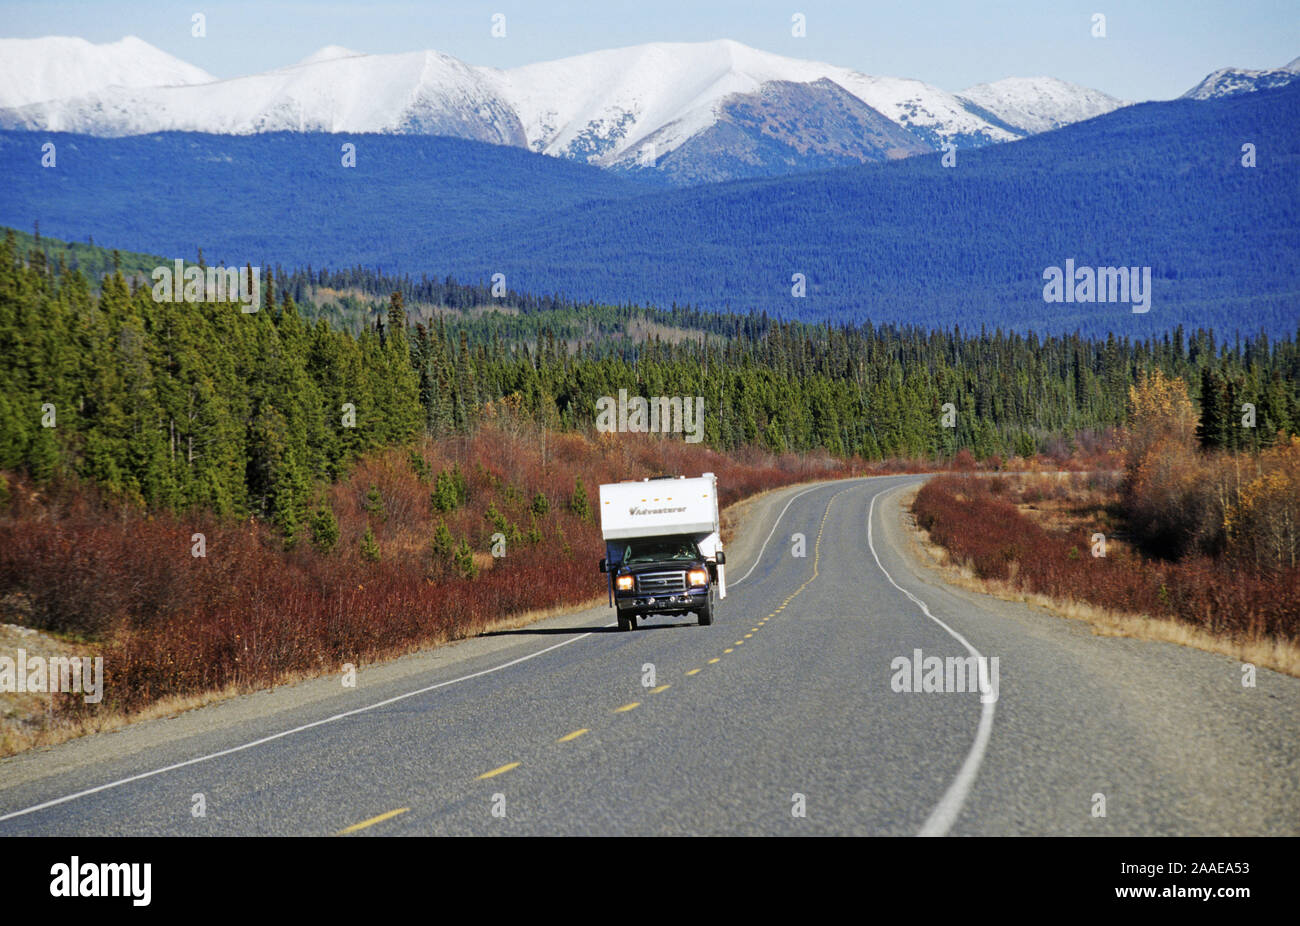 Unterwegs auf dem Alaska Highway - Yukon Territories, Kanada Stock Photo